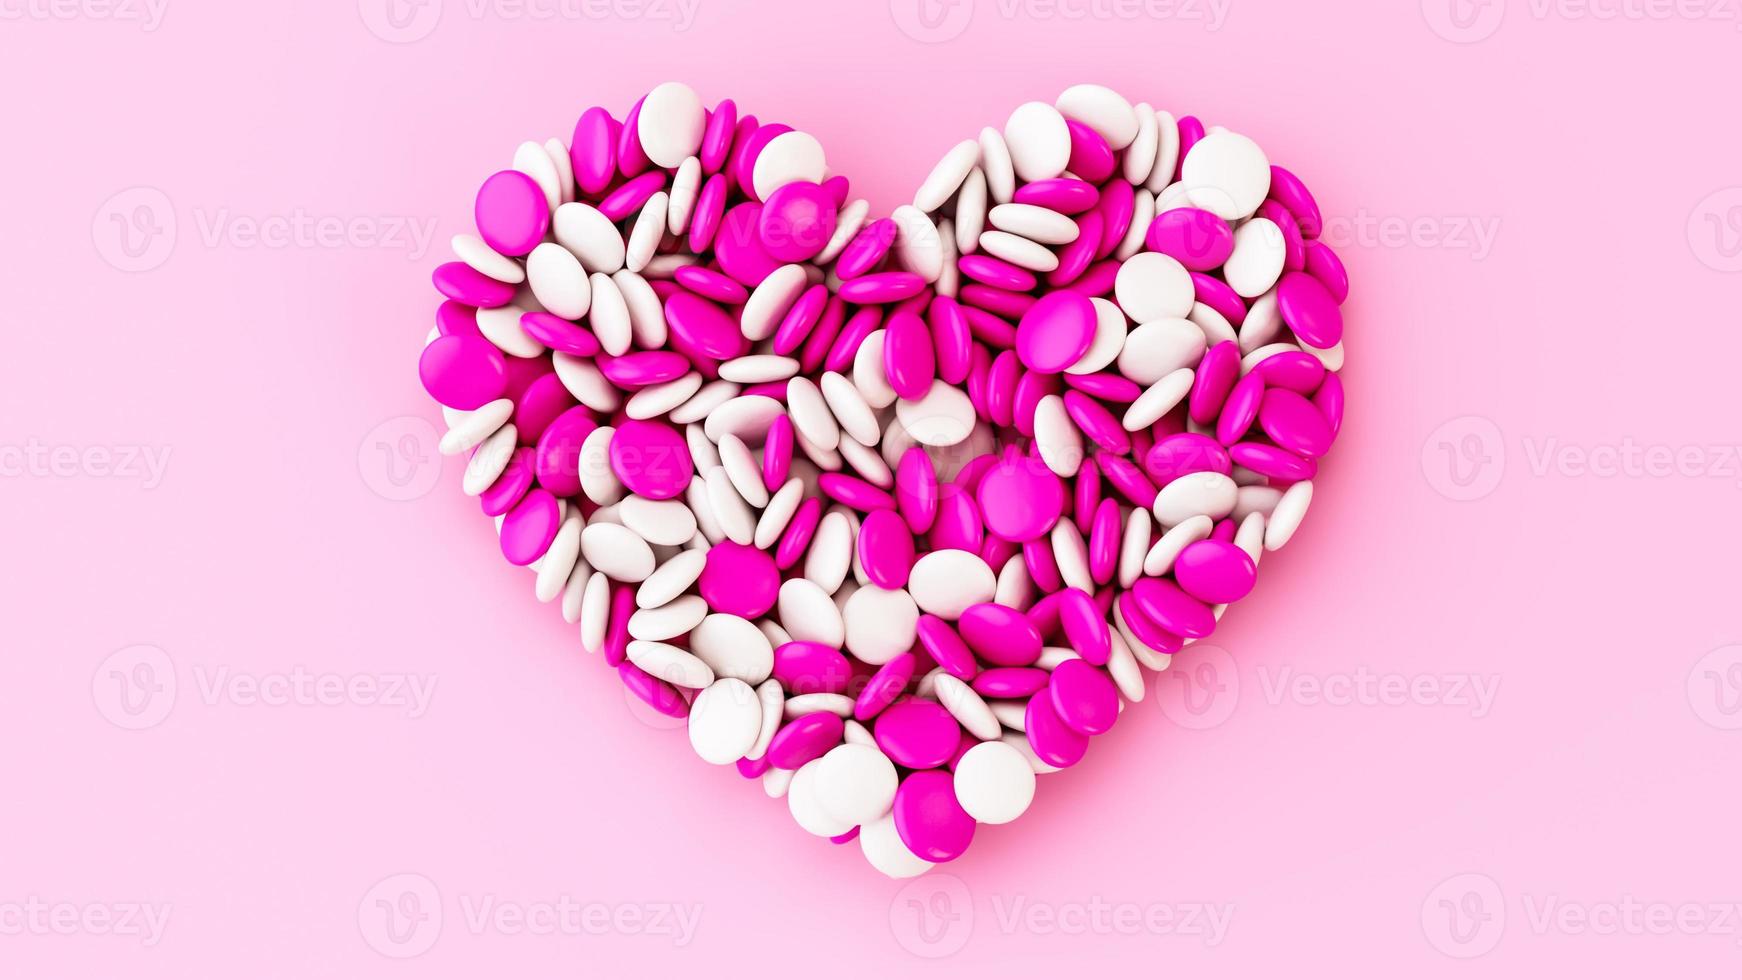 botão de chocolate colorido doces feijão revestido de chocolate coração em forma de fundo rosa valentine aniversário aniversário casamento conceito de amor foto